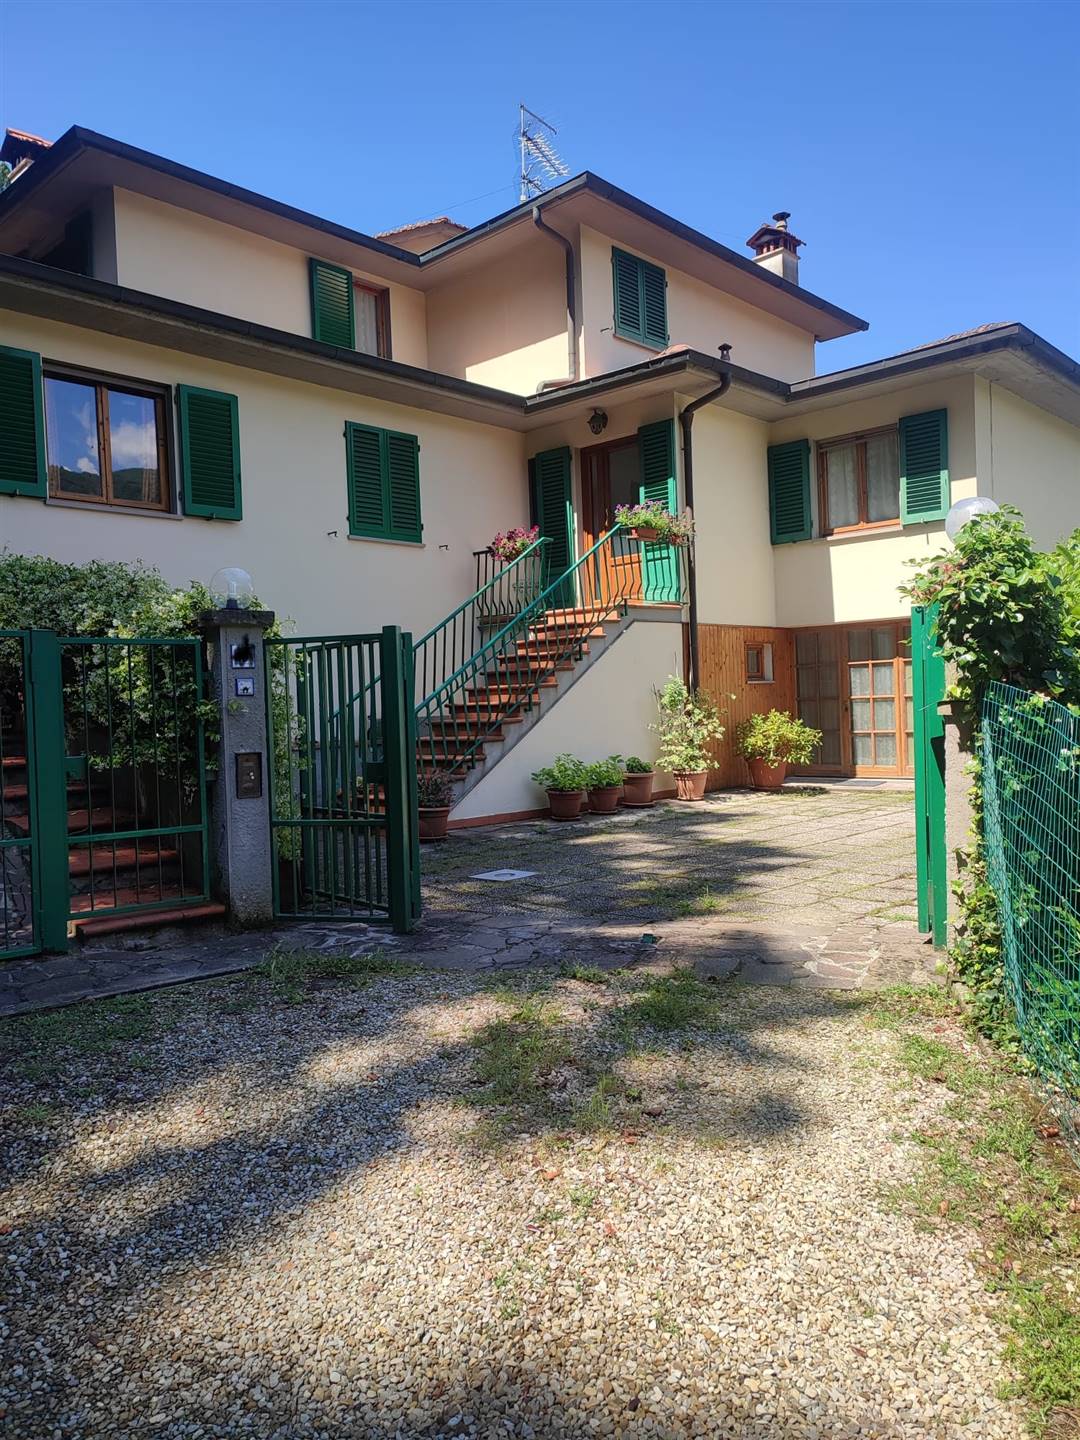 Villa Bifamiliare in vendita a Londa, 8 locali, prezzo € 280.000 | PortaleAgenzieImmobiliari.it